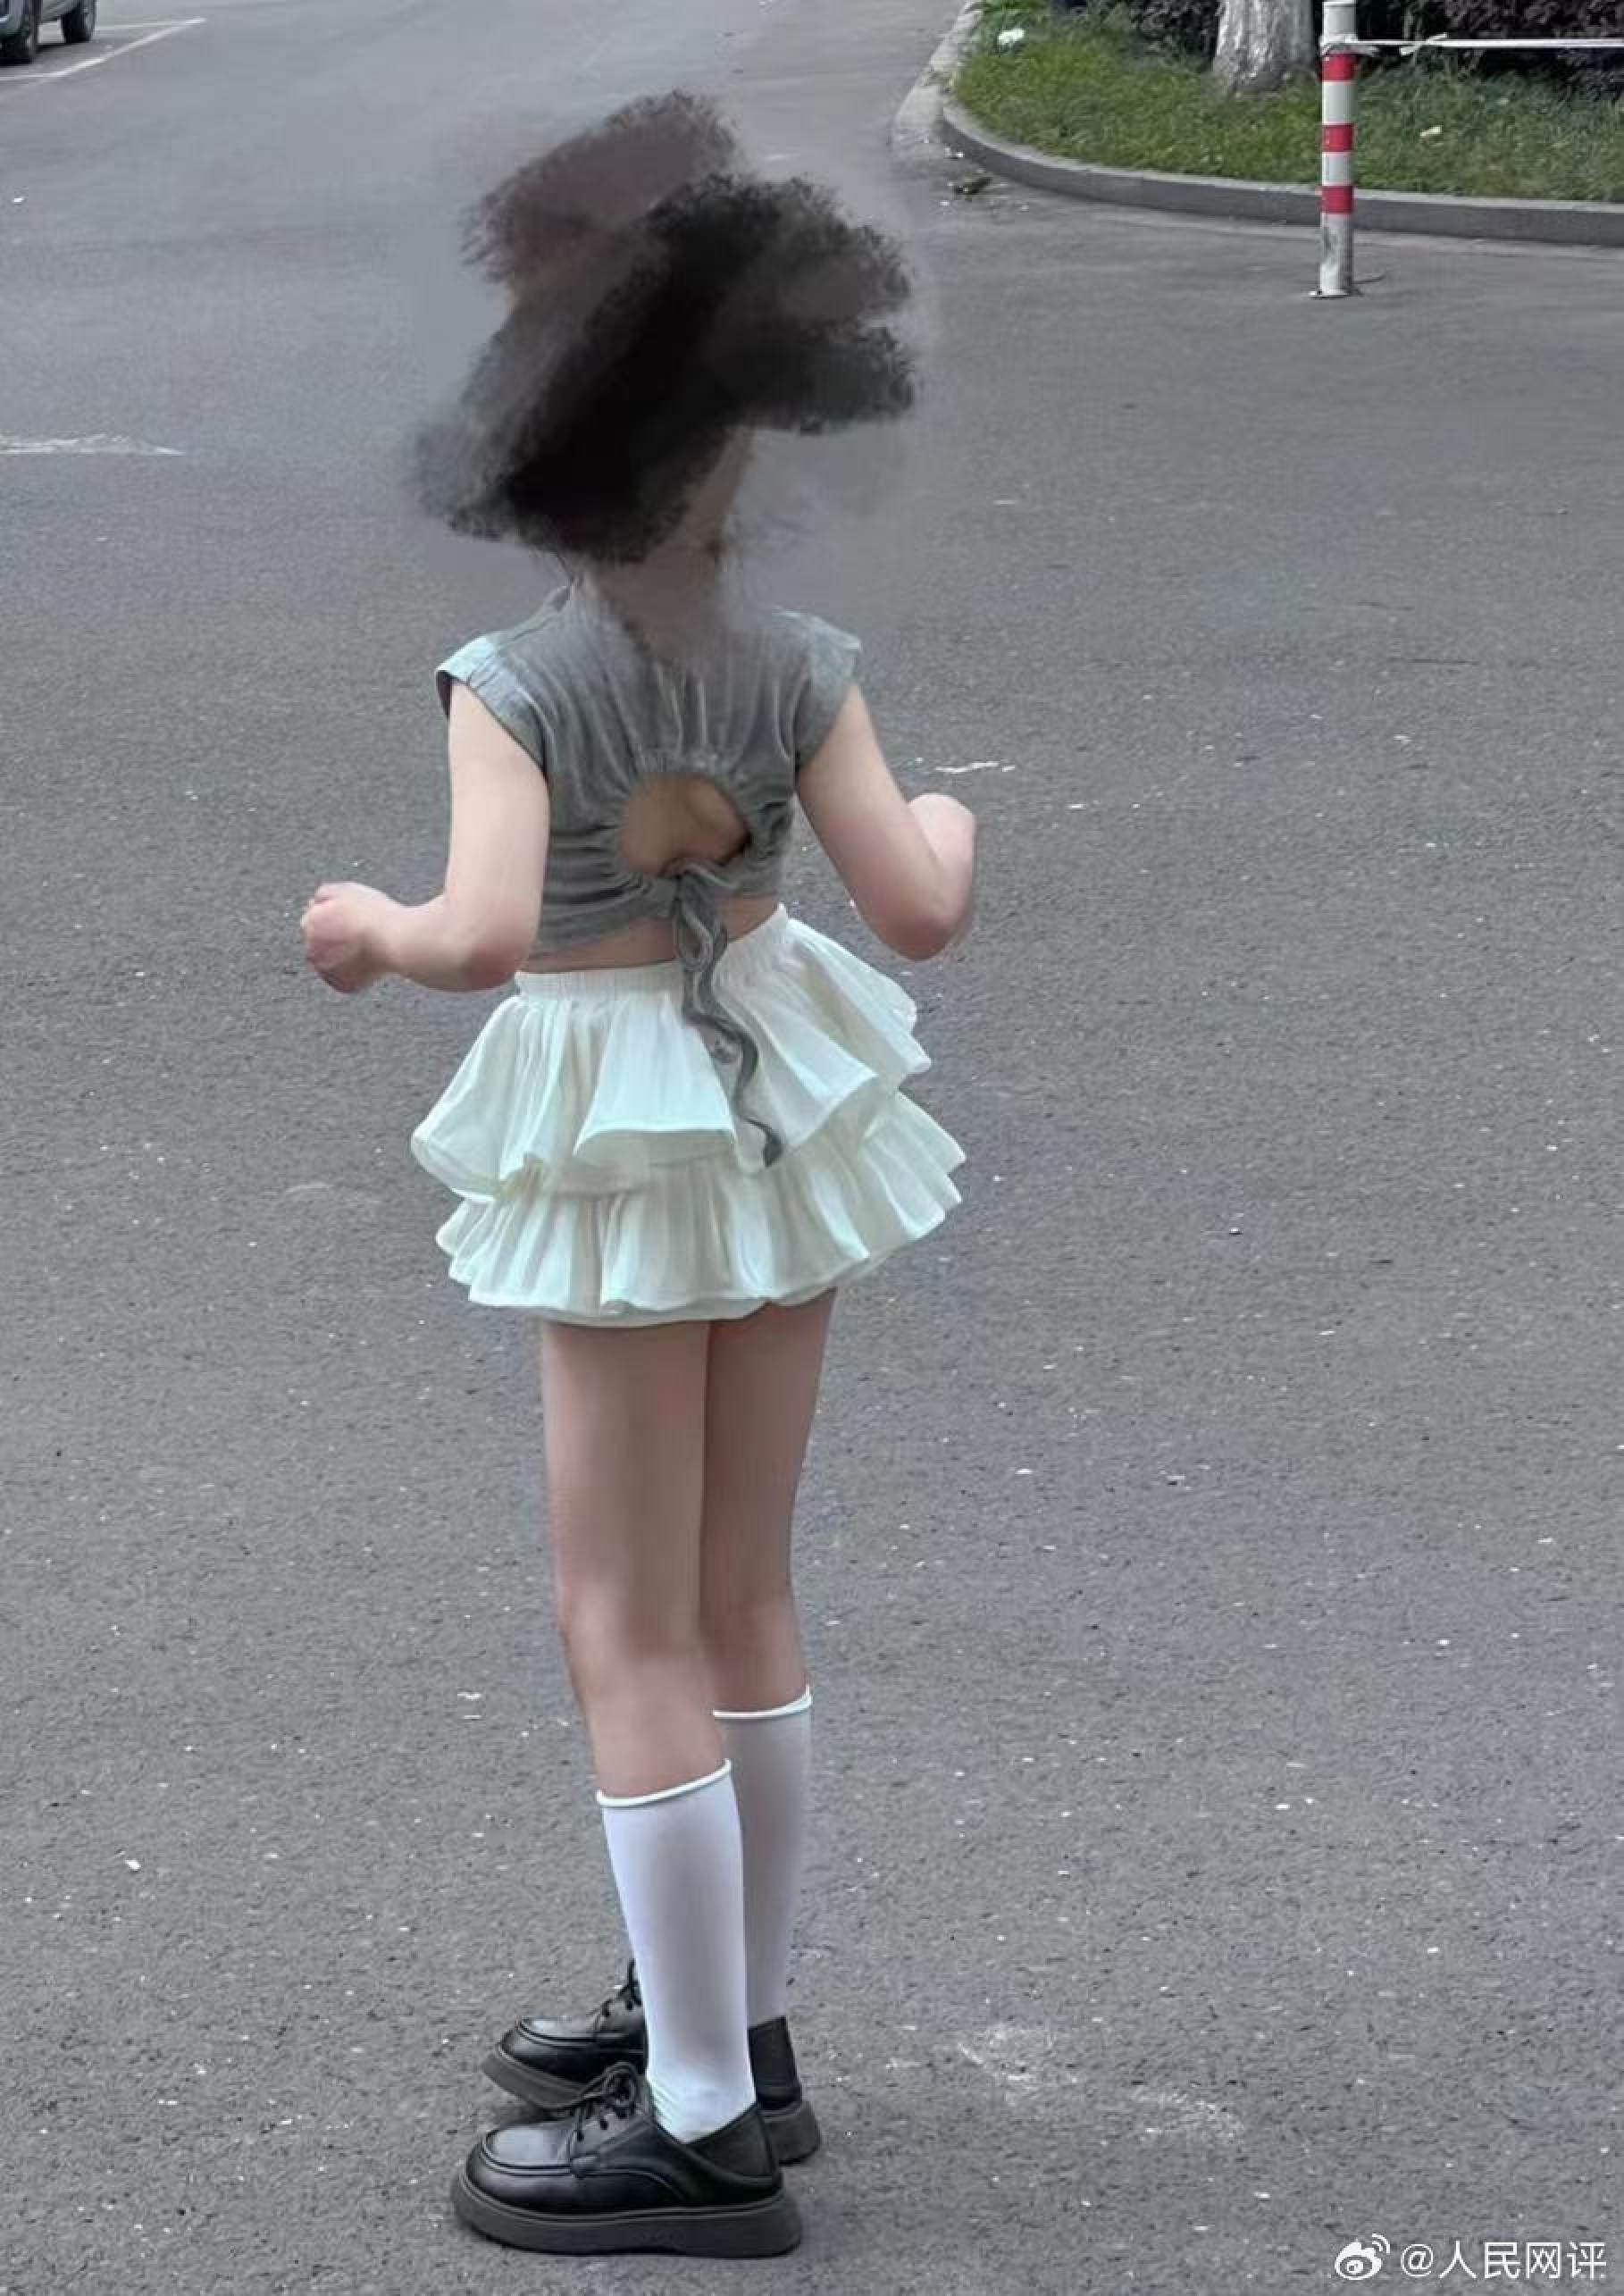 Trung Quốc cấm trào lưu cho bé gái mặc đồ gợi cảm như người lớn - Ảnh 2.